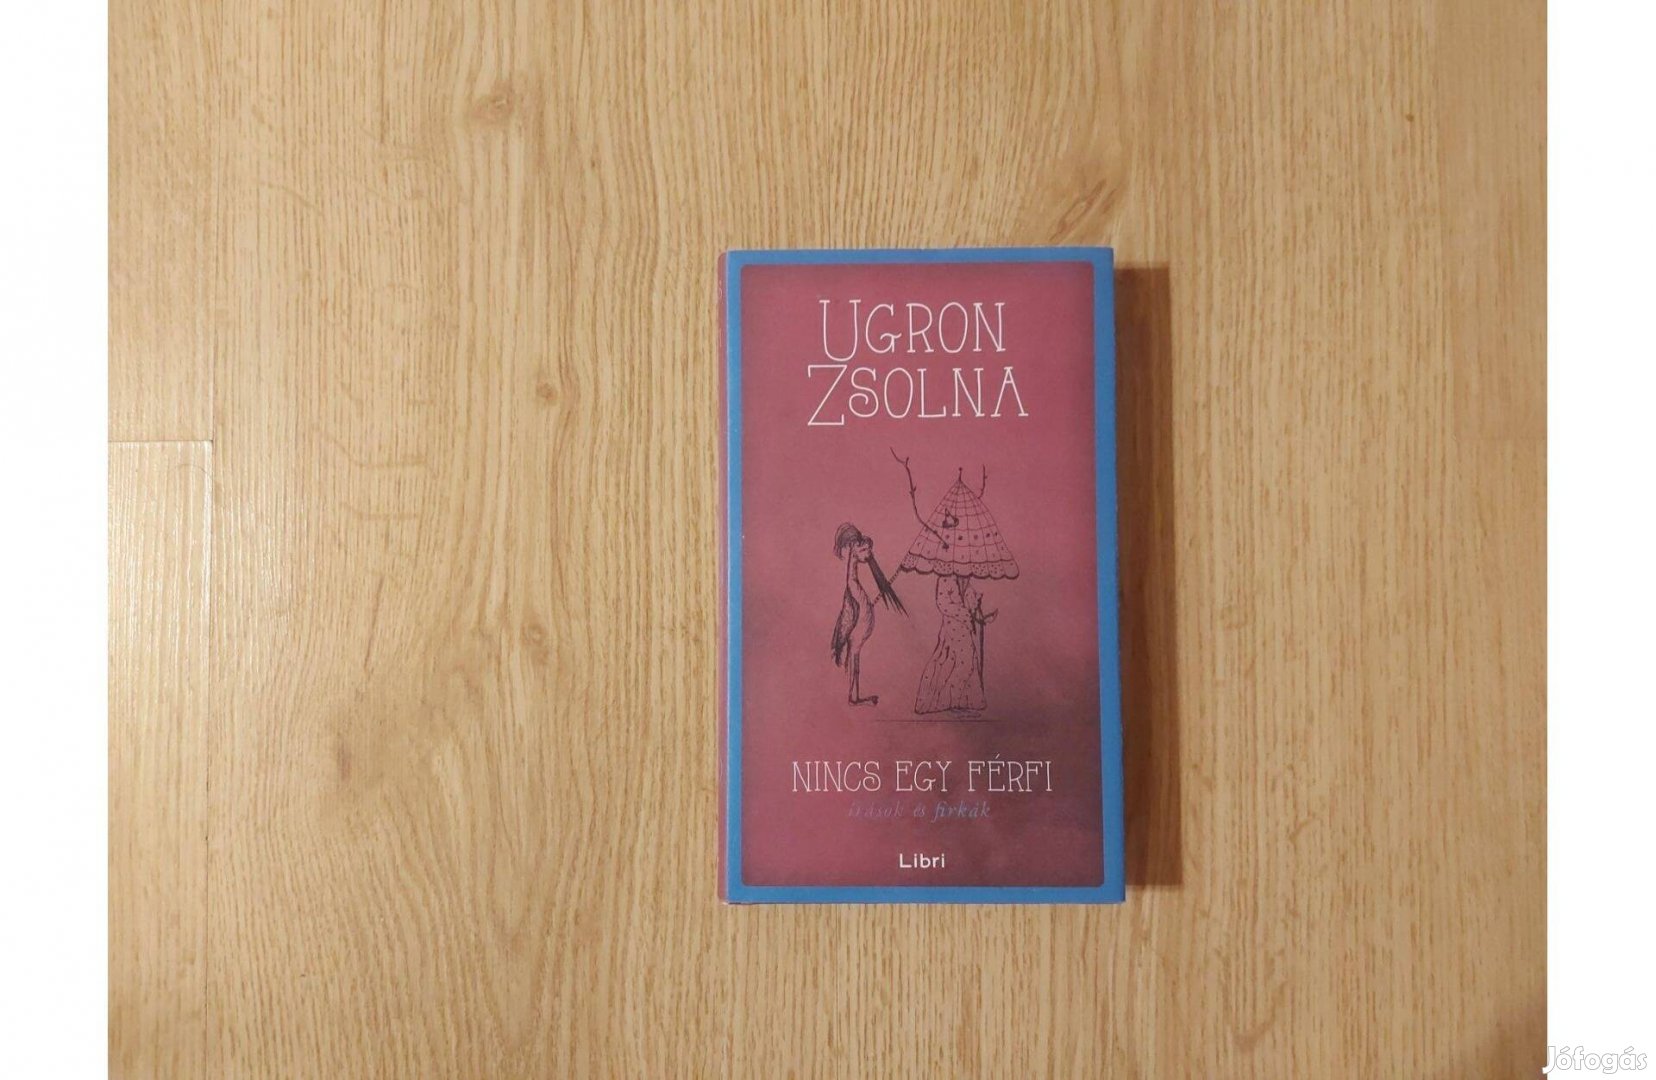 Ugron Zsolna: Nincs egy férfi. Írások és firkák